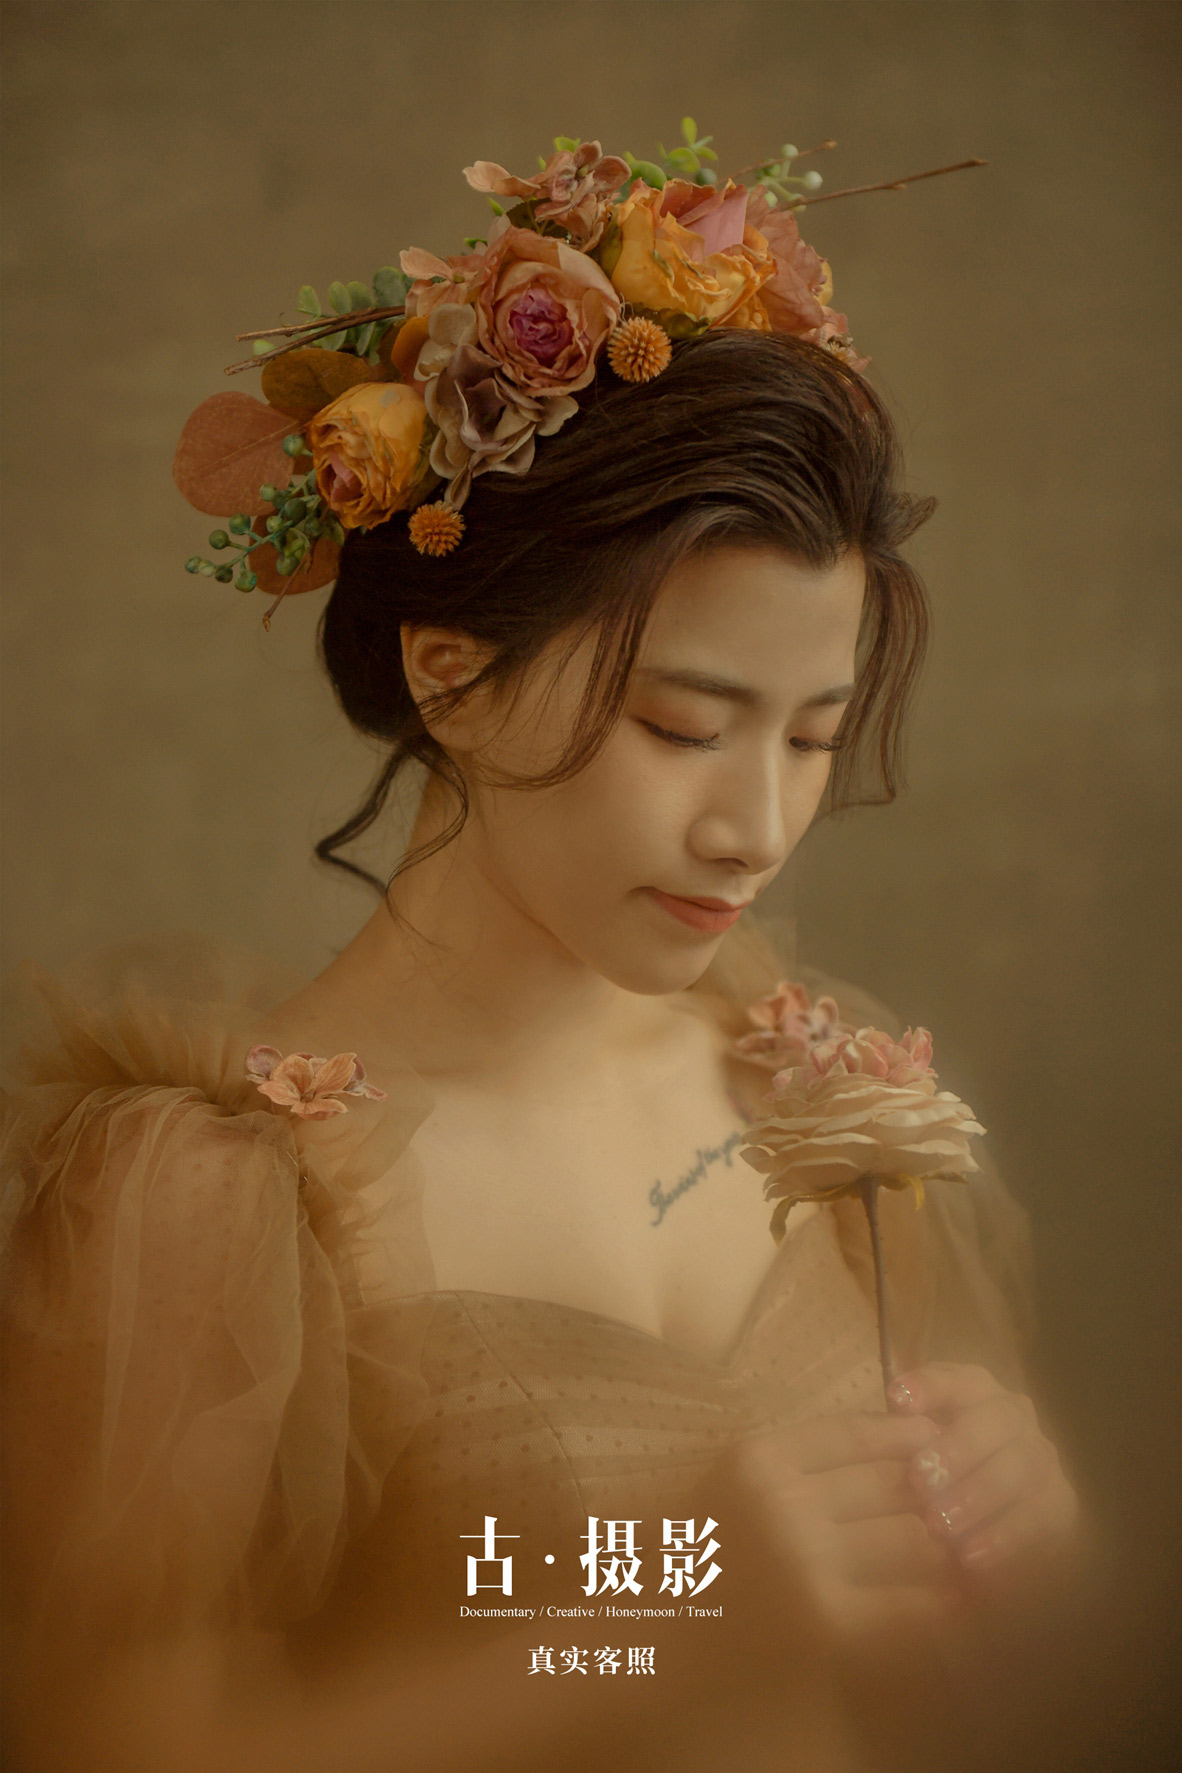 黎先生 潘小姐 - 每日客照 - 广州婚纱摄影-广州古摄影官网